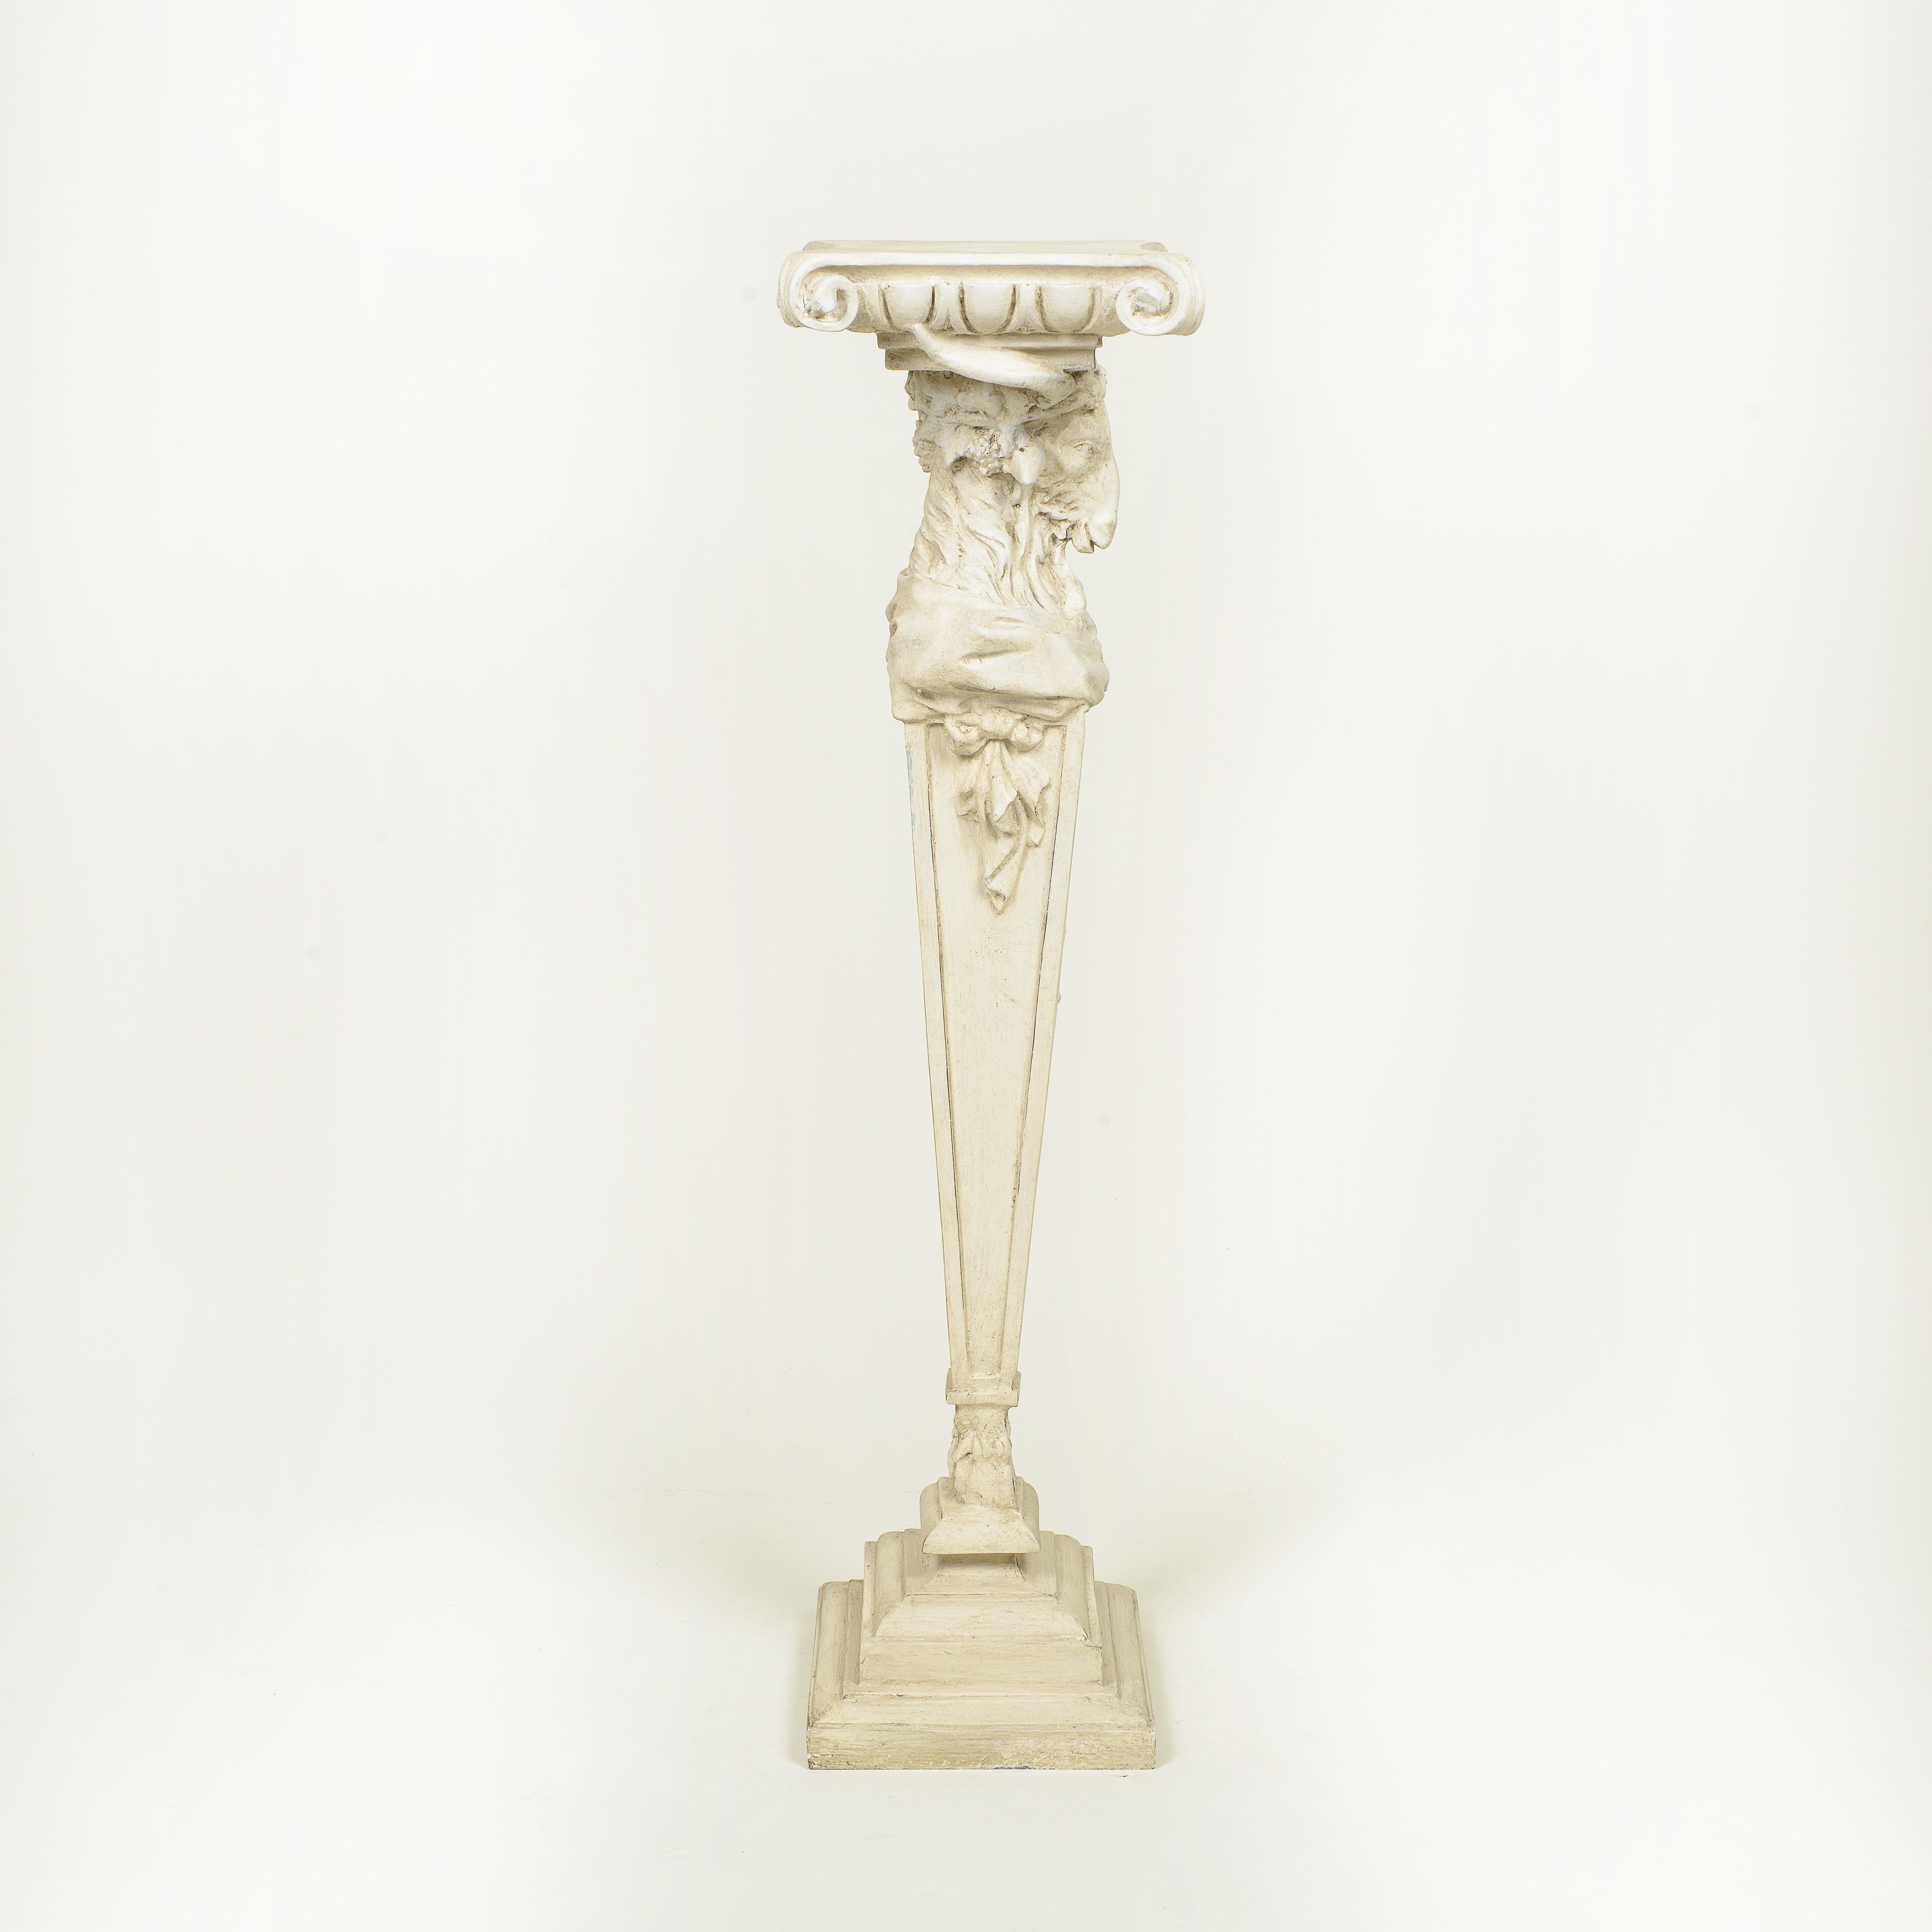 The Pedestal im neoklassischen Stil, weiß bemalt und geschnitzt (Neoklassisch)